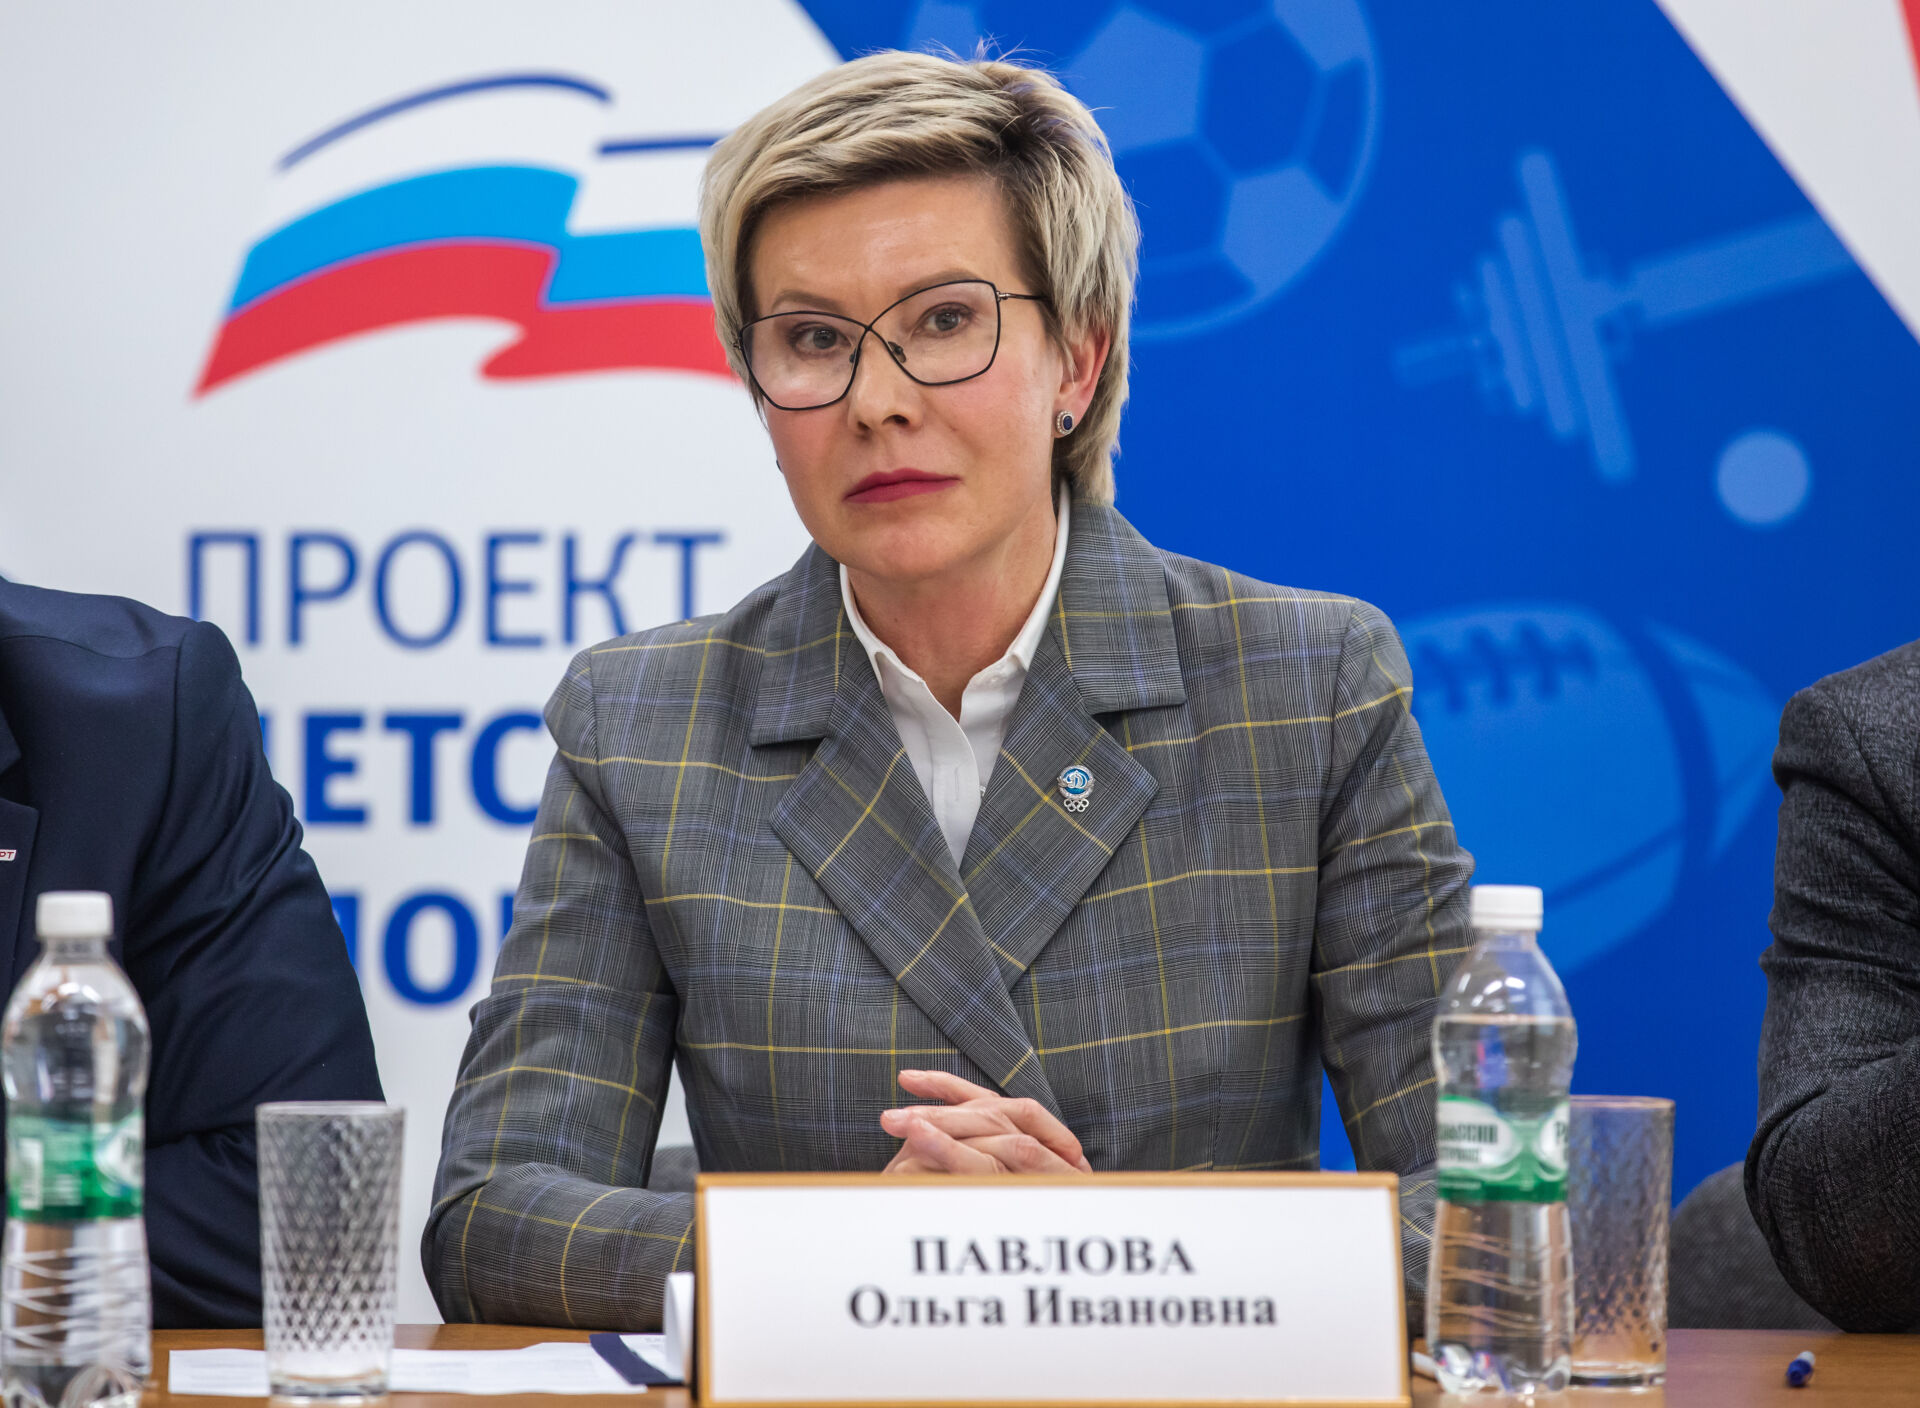 Ольга Павлова: Члены и кандидаты сборной РФ должны приносить присягу спортсмена